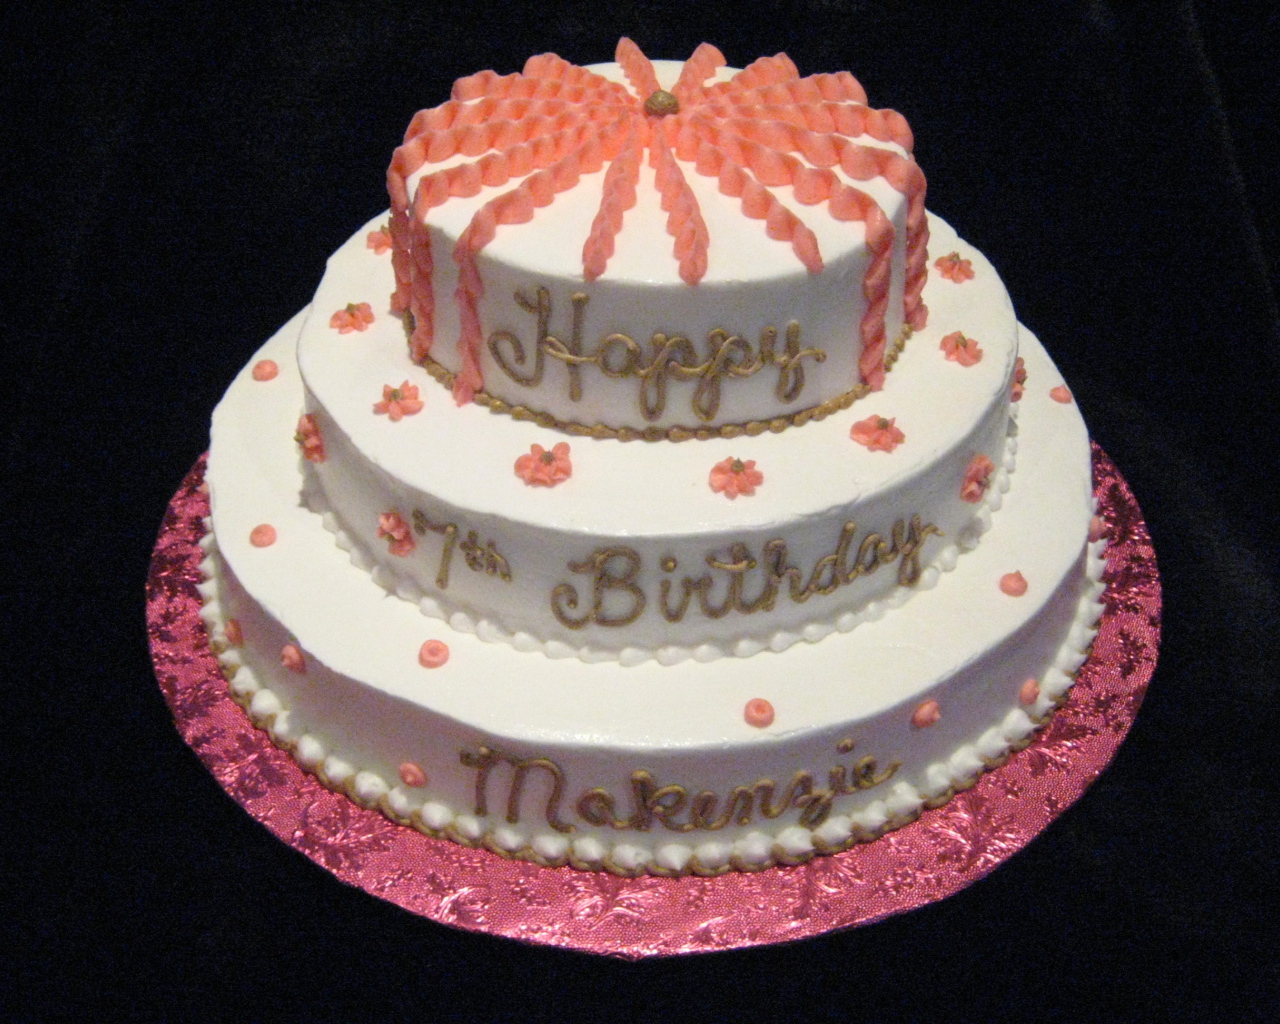  Вкусный торт ко дню рождения на черном фоне